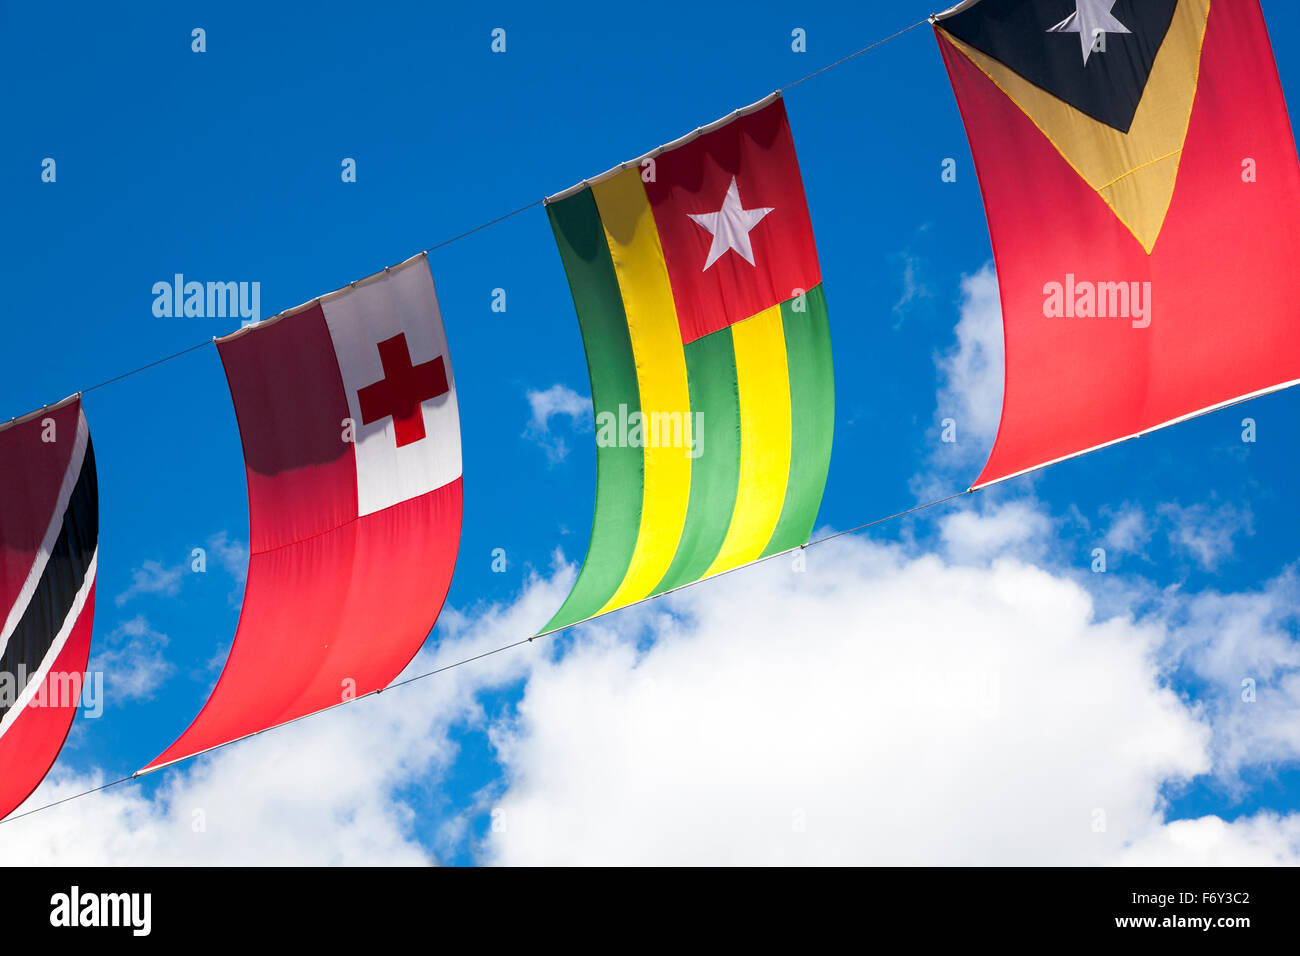 Les drapeaux des pays du monde coloré contre un ciel bleu (Trinité-et-Tobago, Tonga, le Togo, le Timor oriental) Banque D'Images